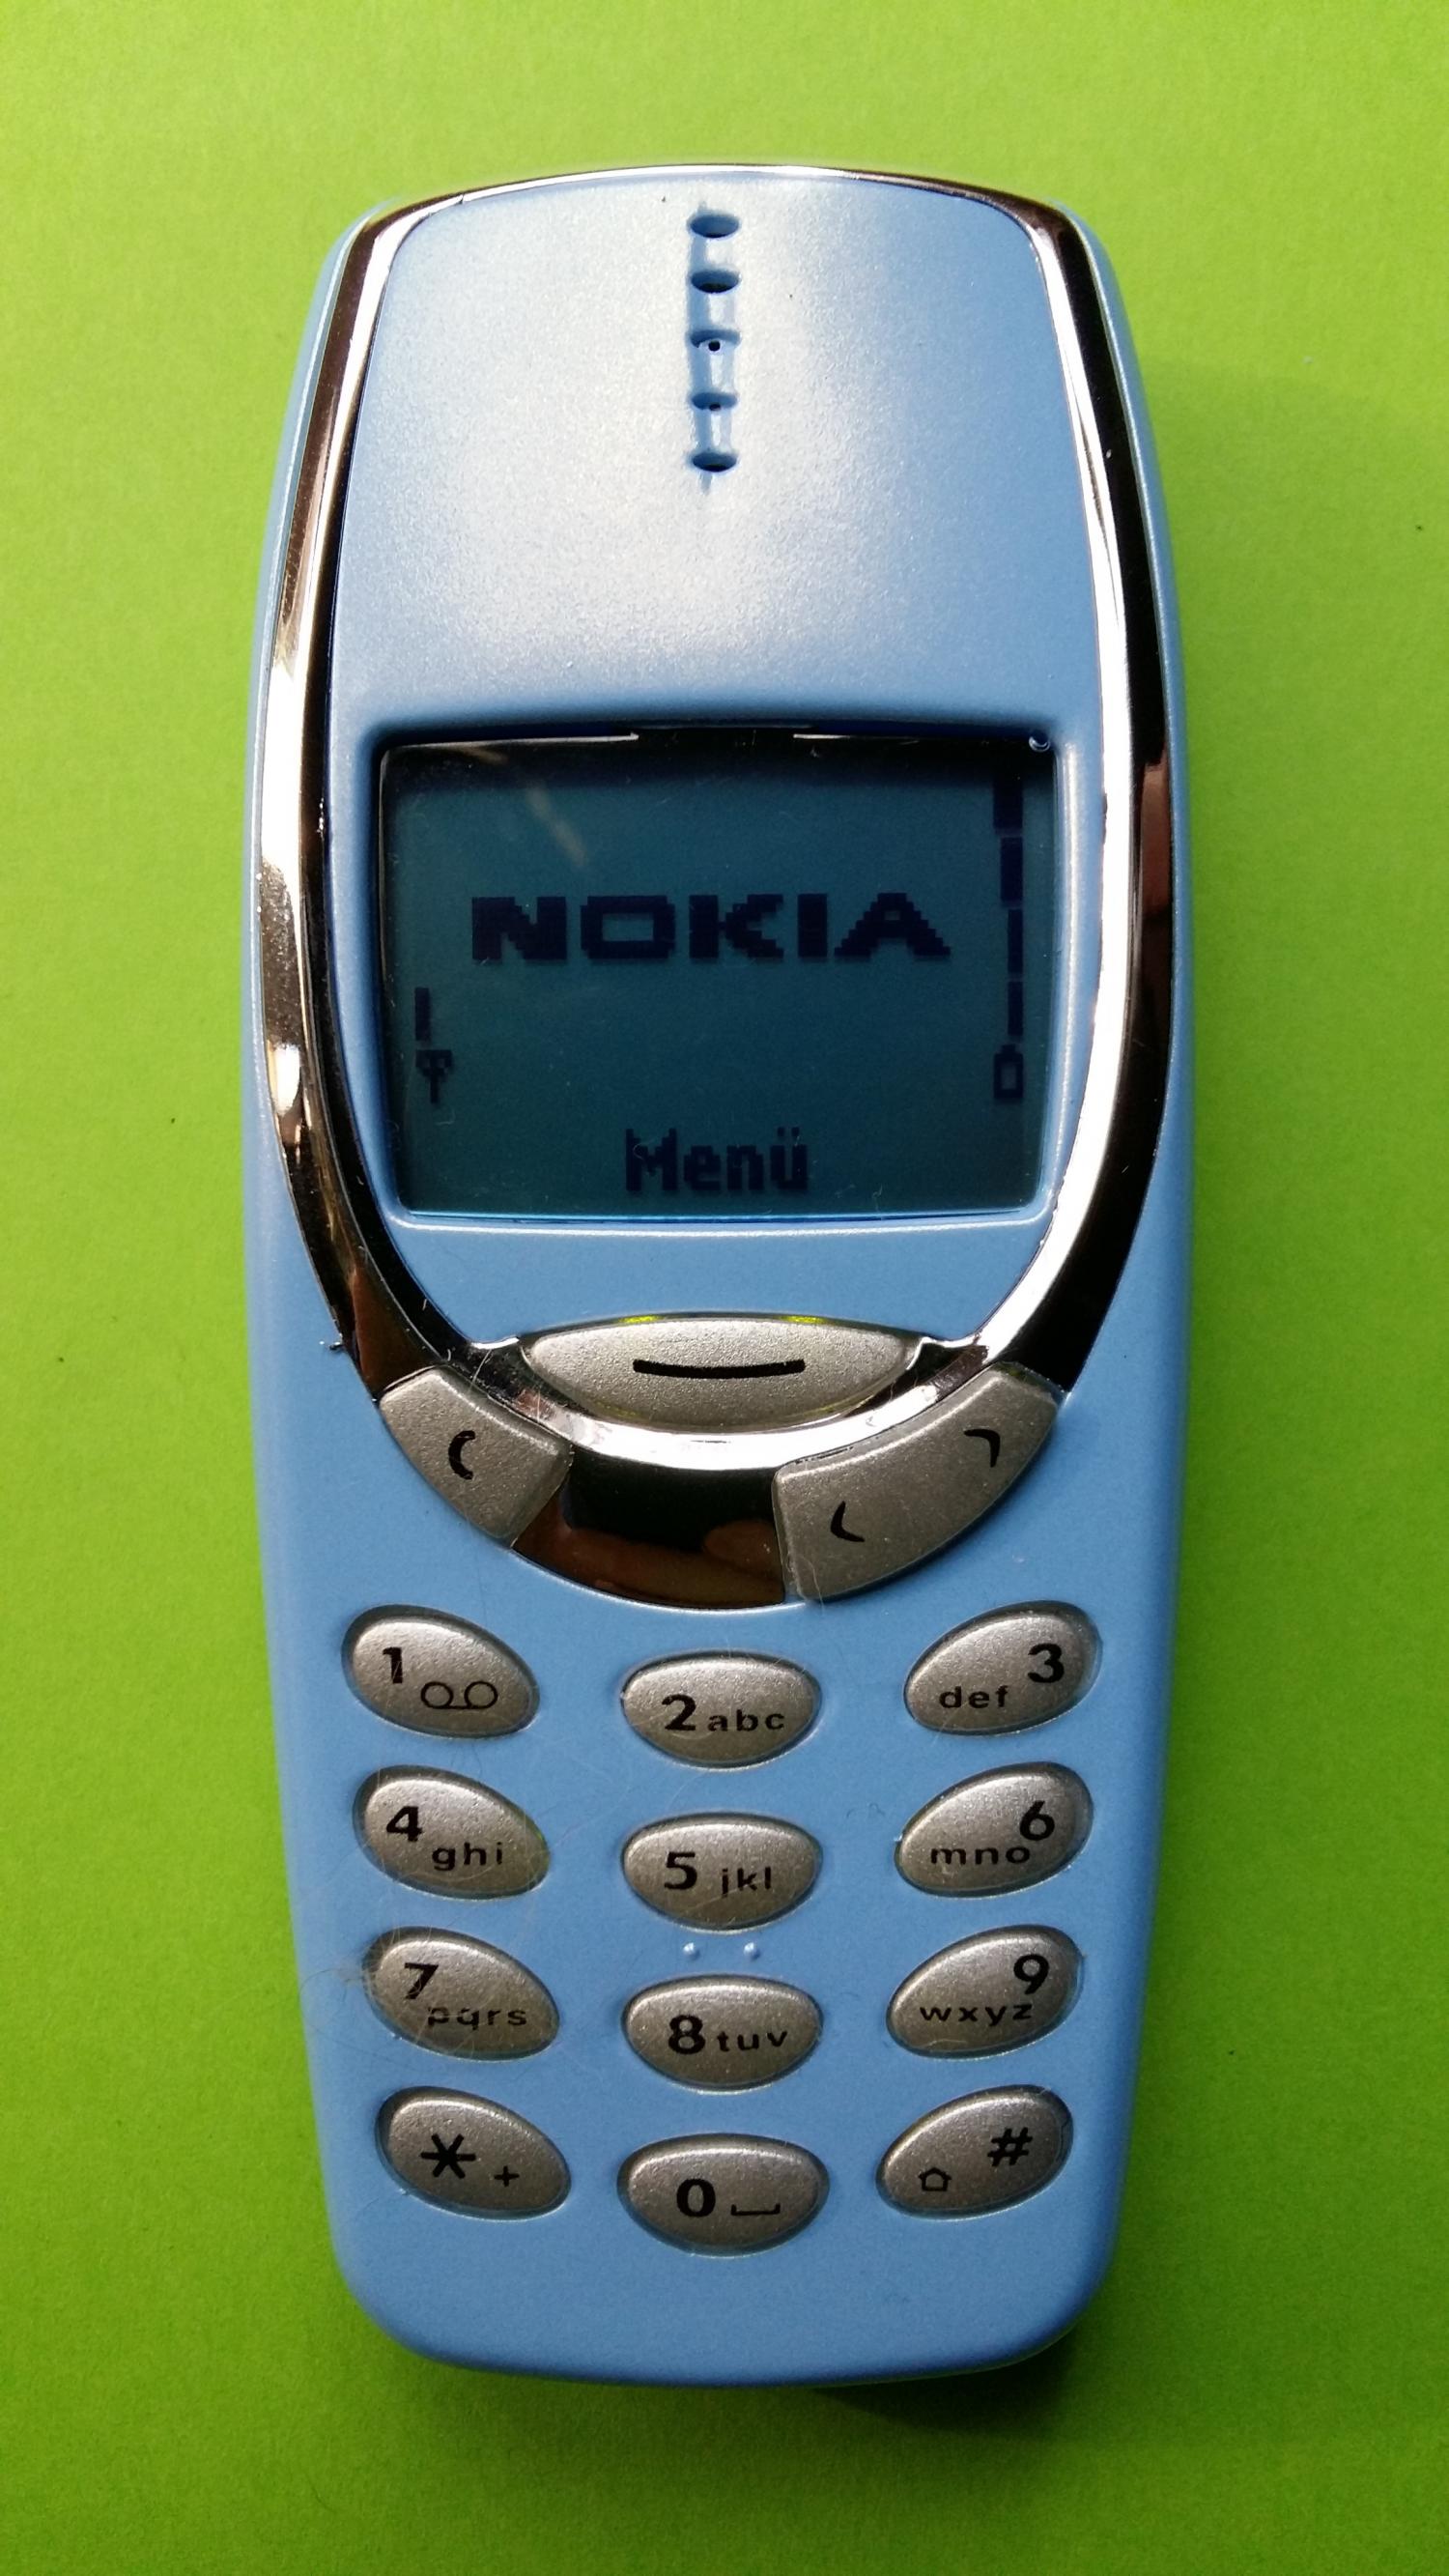 image-7304761-Nokia 3330 (22)1.jpg